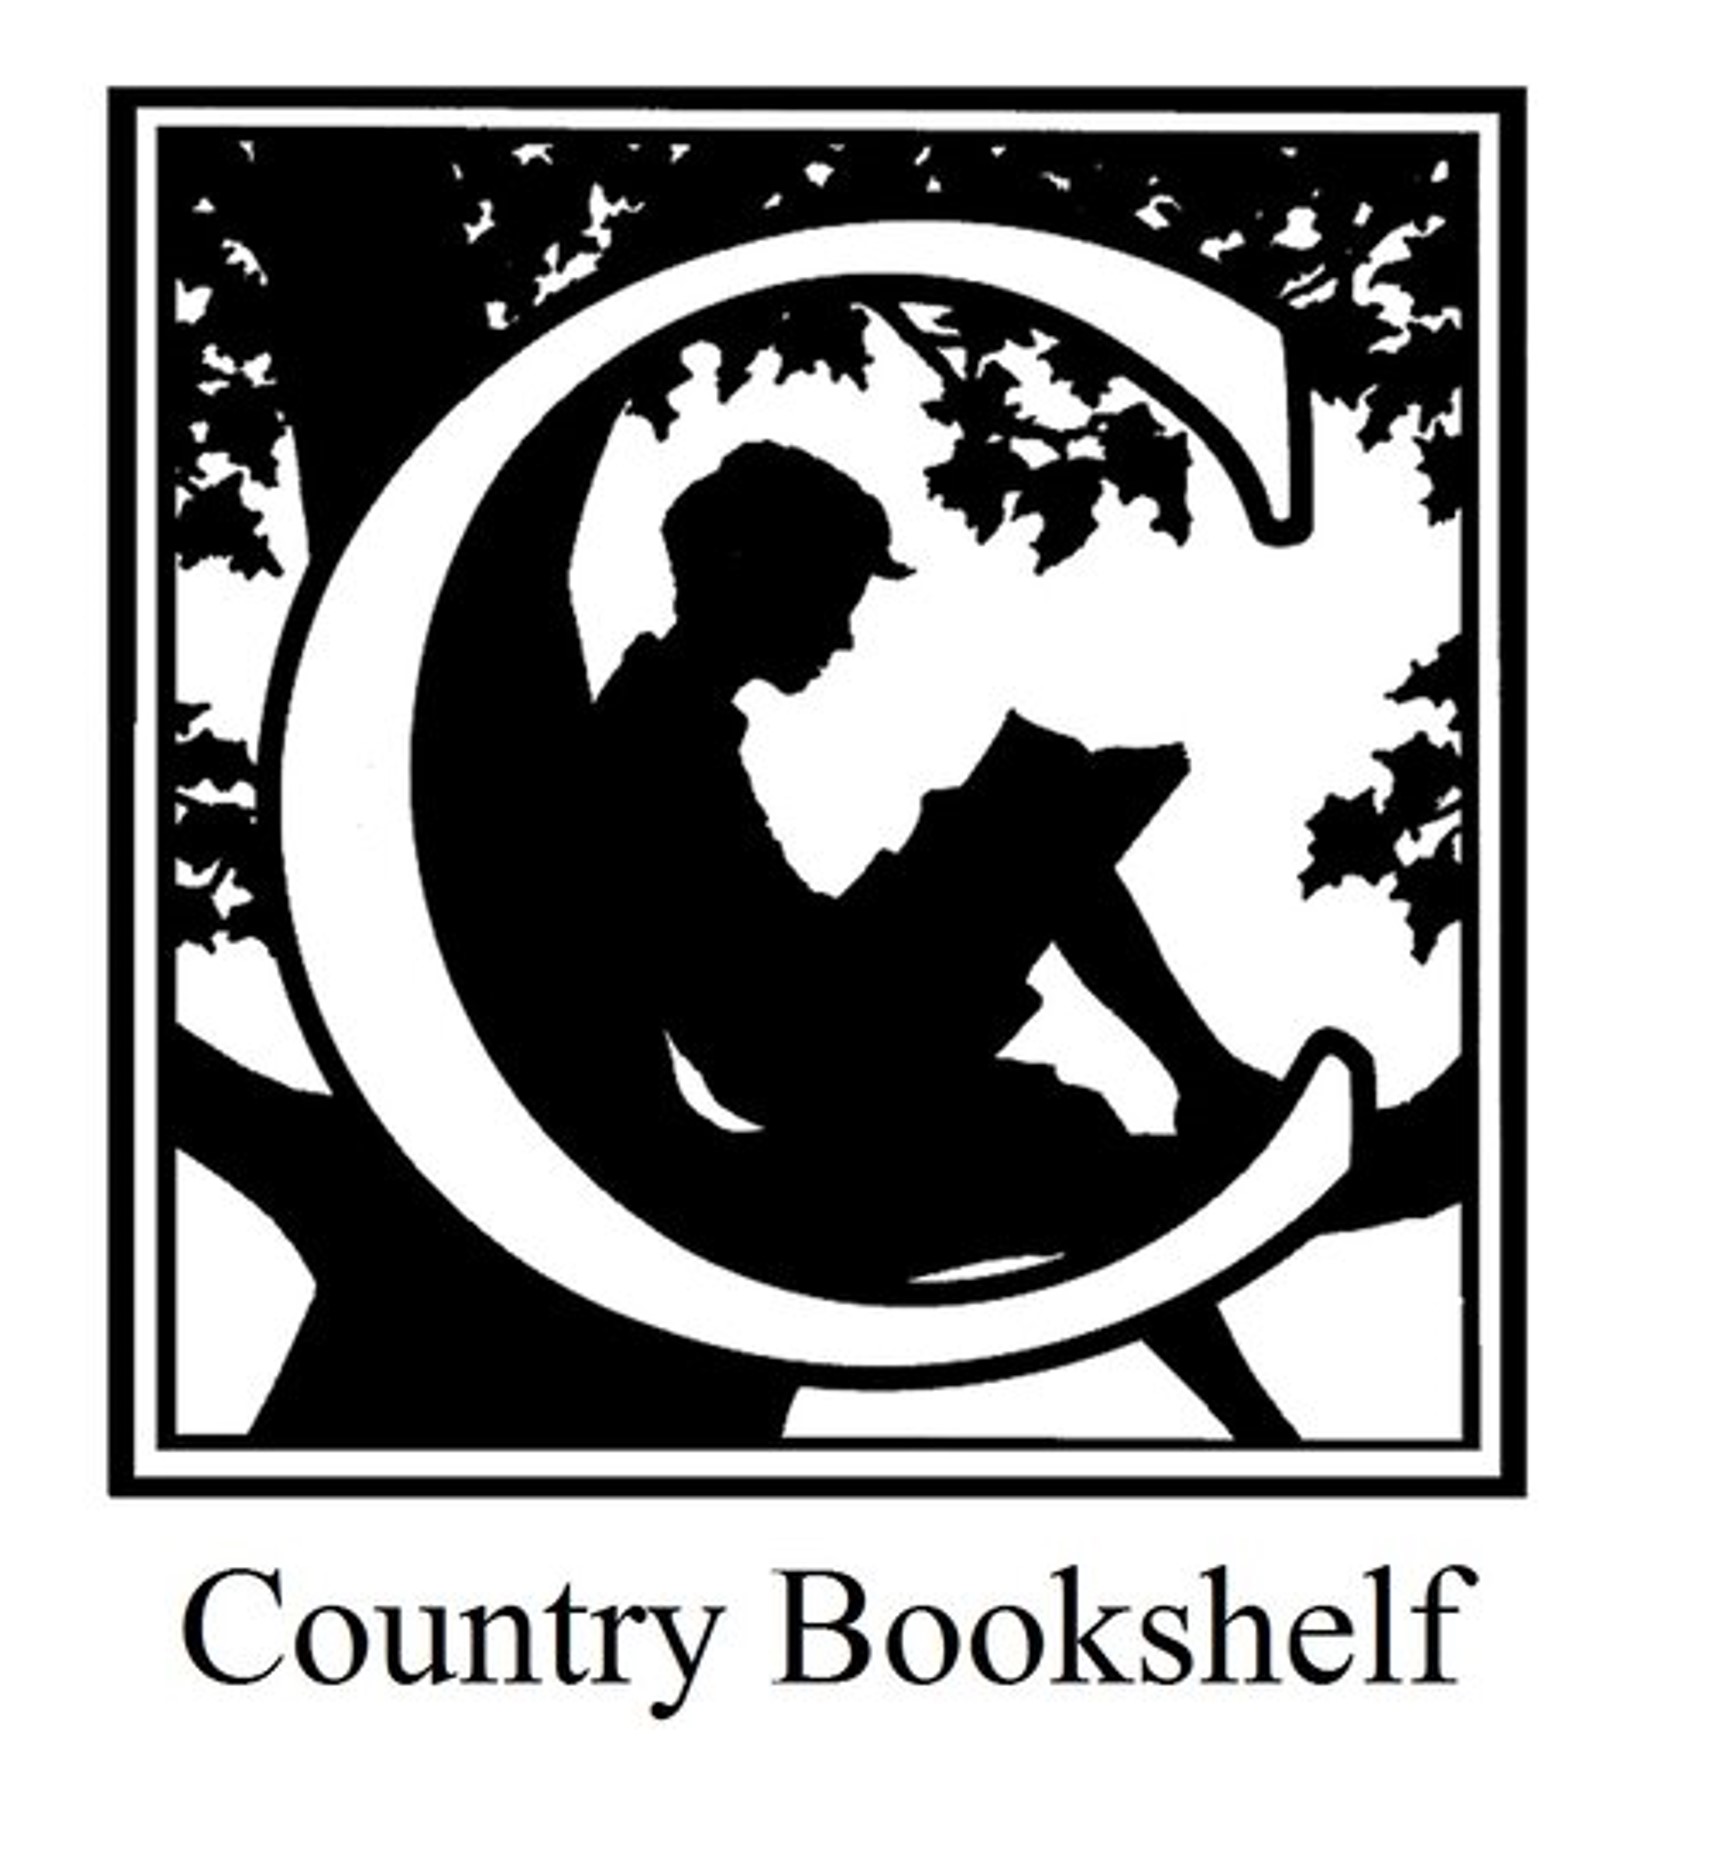 Country Bookshelf